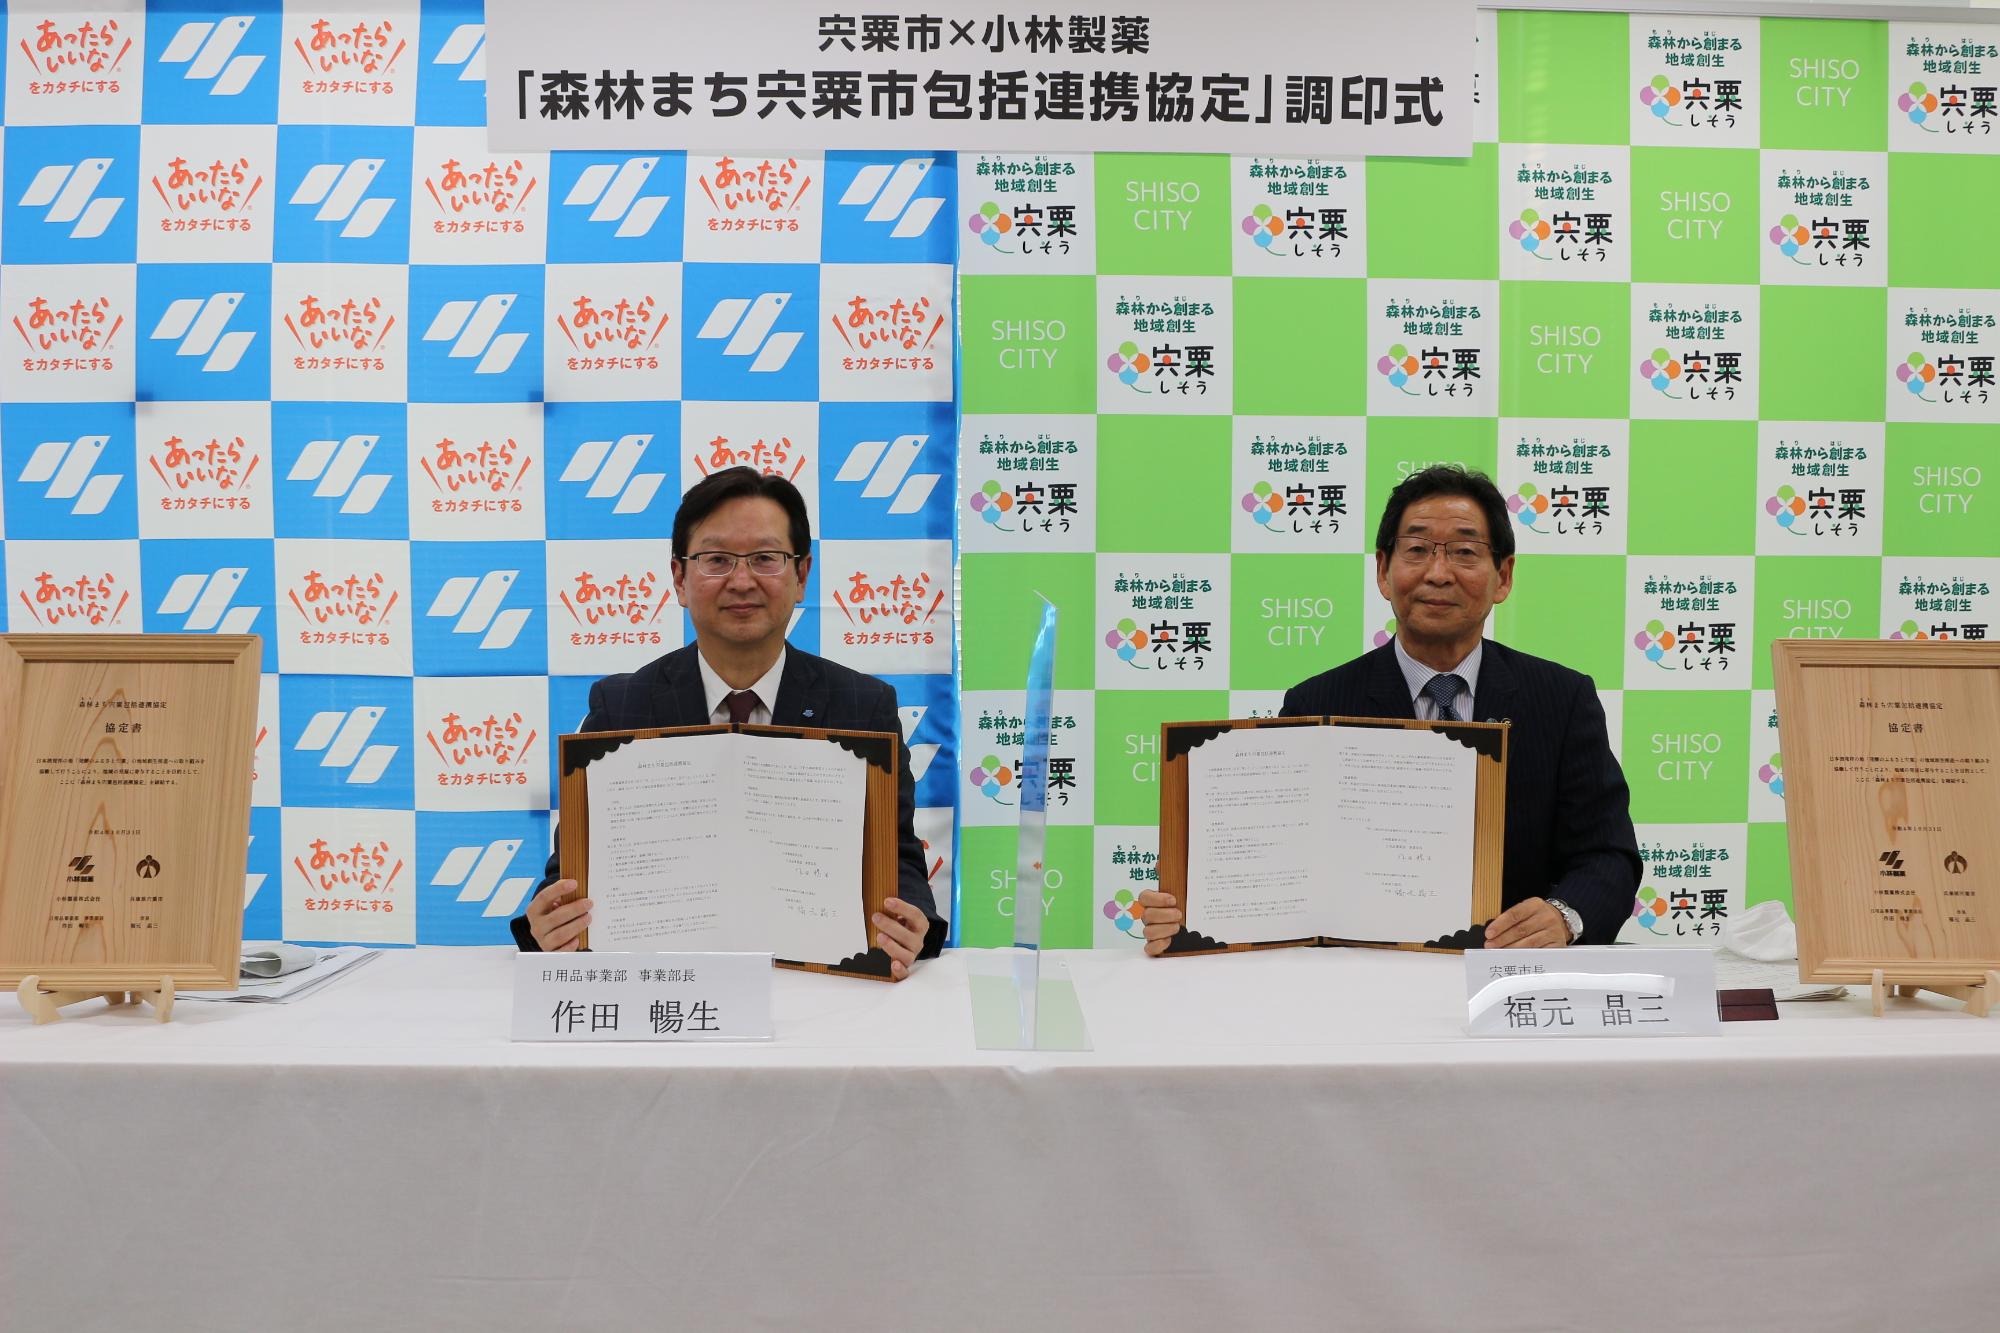 協定書を手に小林製薬の作田部長（左）と福元市長（右）が並んでいる写真